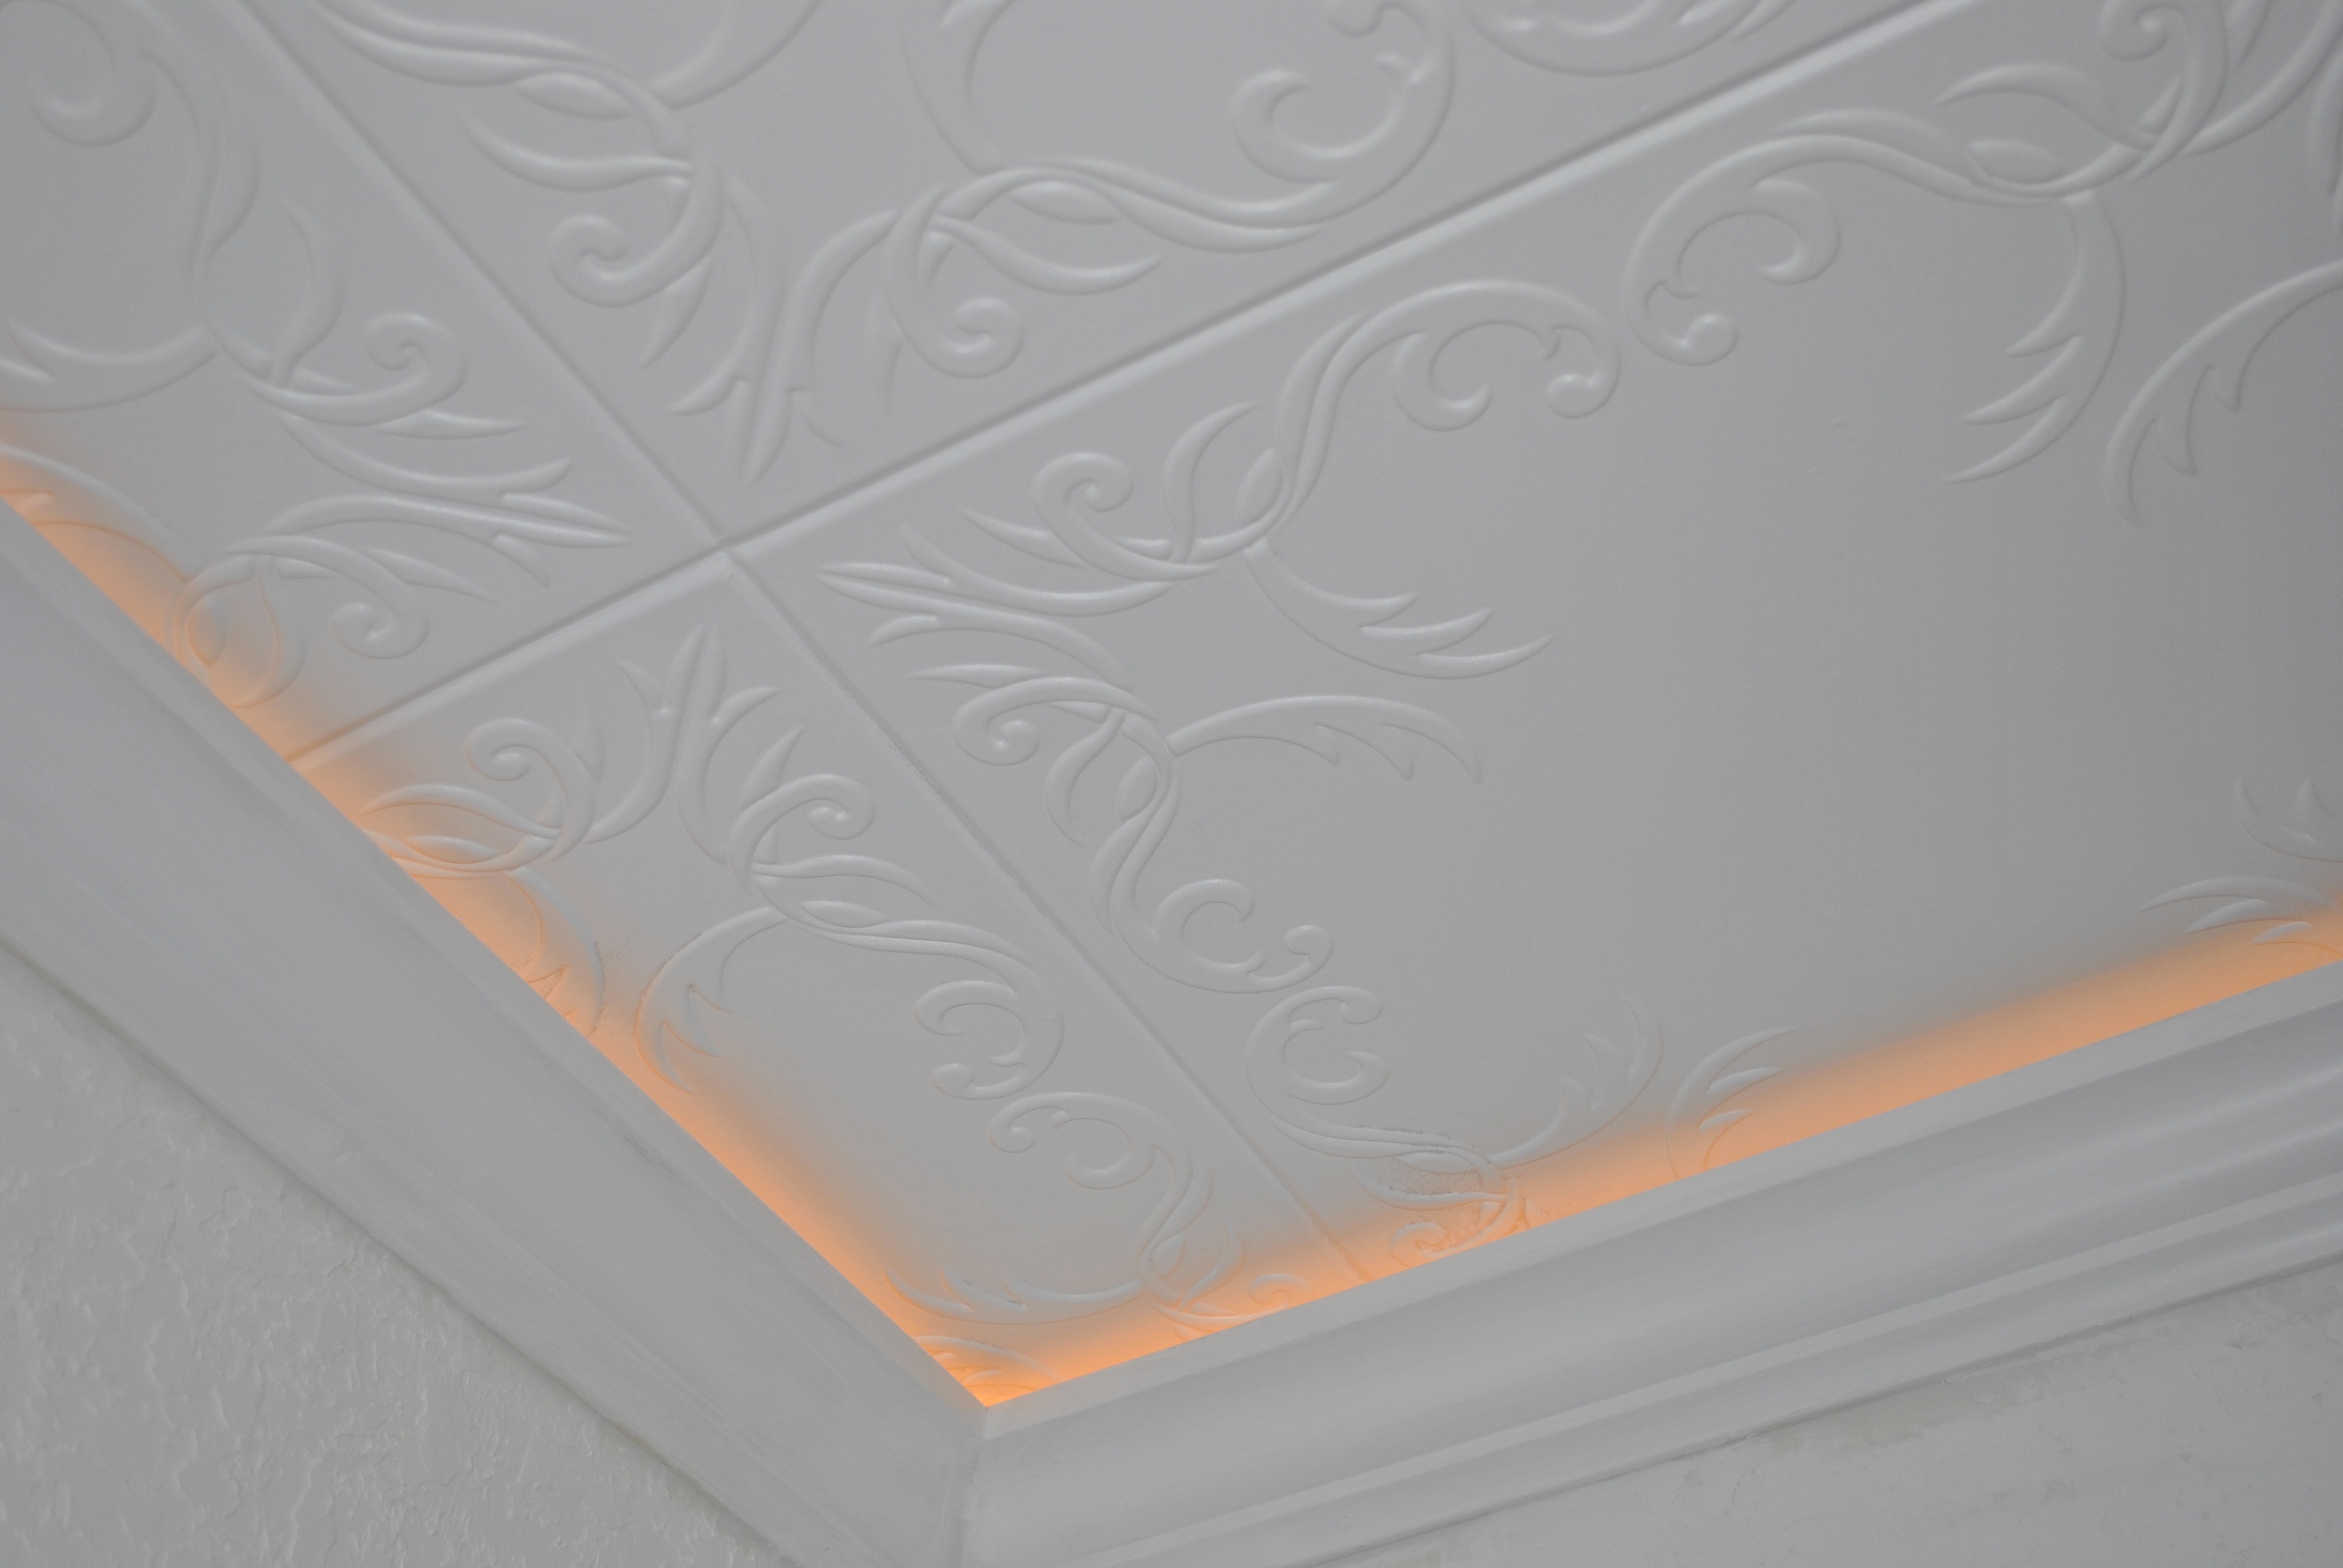 Glue For Styrofoam Ceiling Tilesstyrofoam glue up ceiling tiles with outstanding styrofoam ceiling